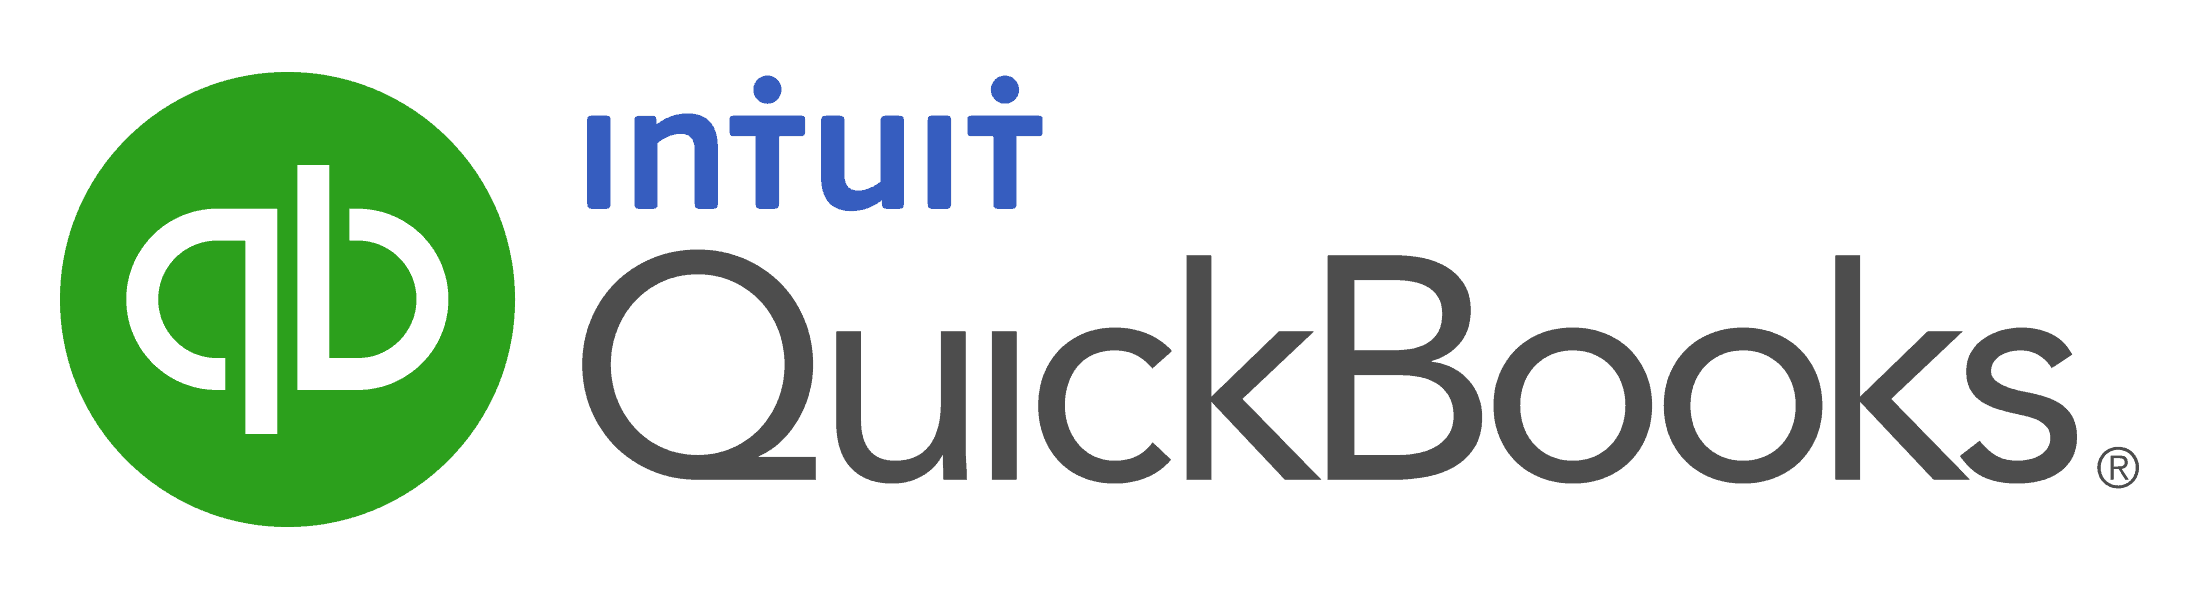 Intuit QuickBooks Online